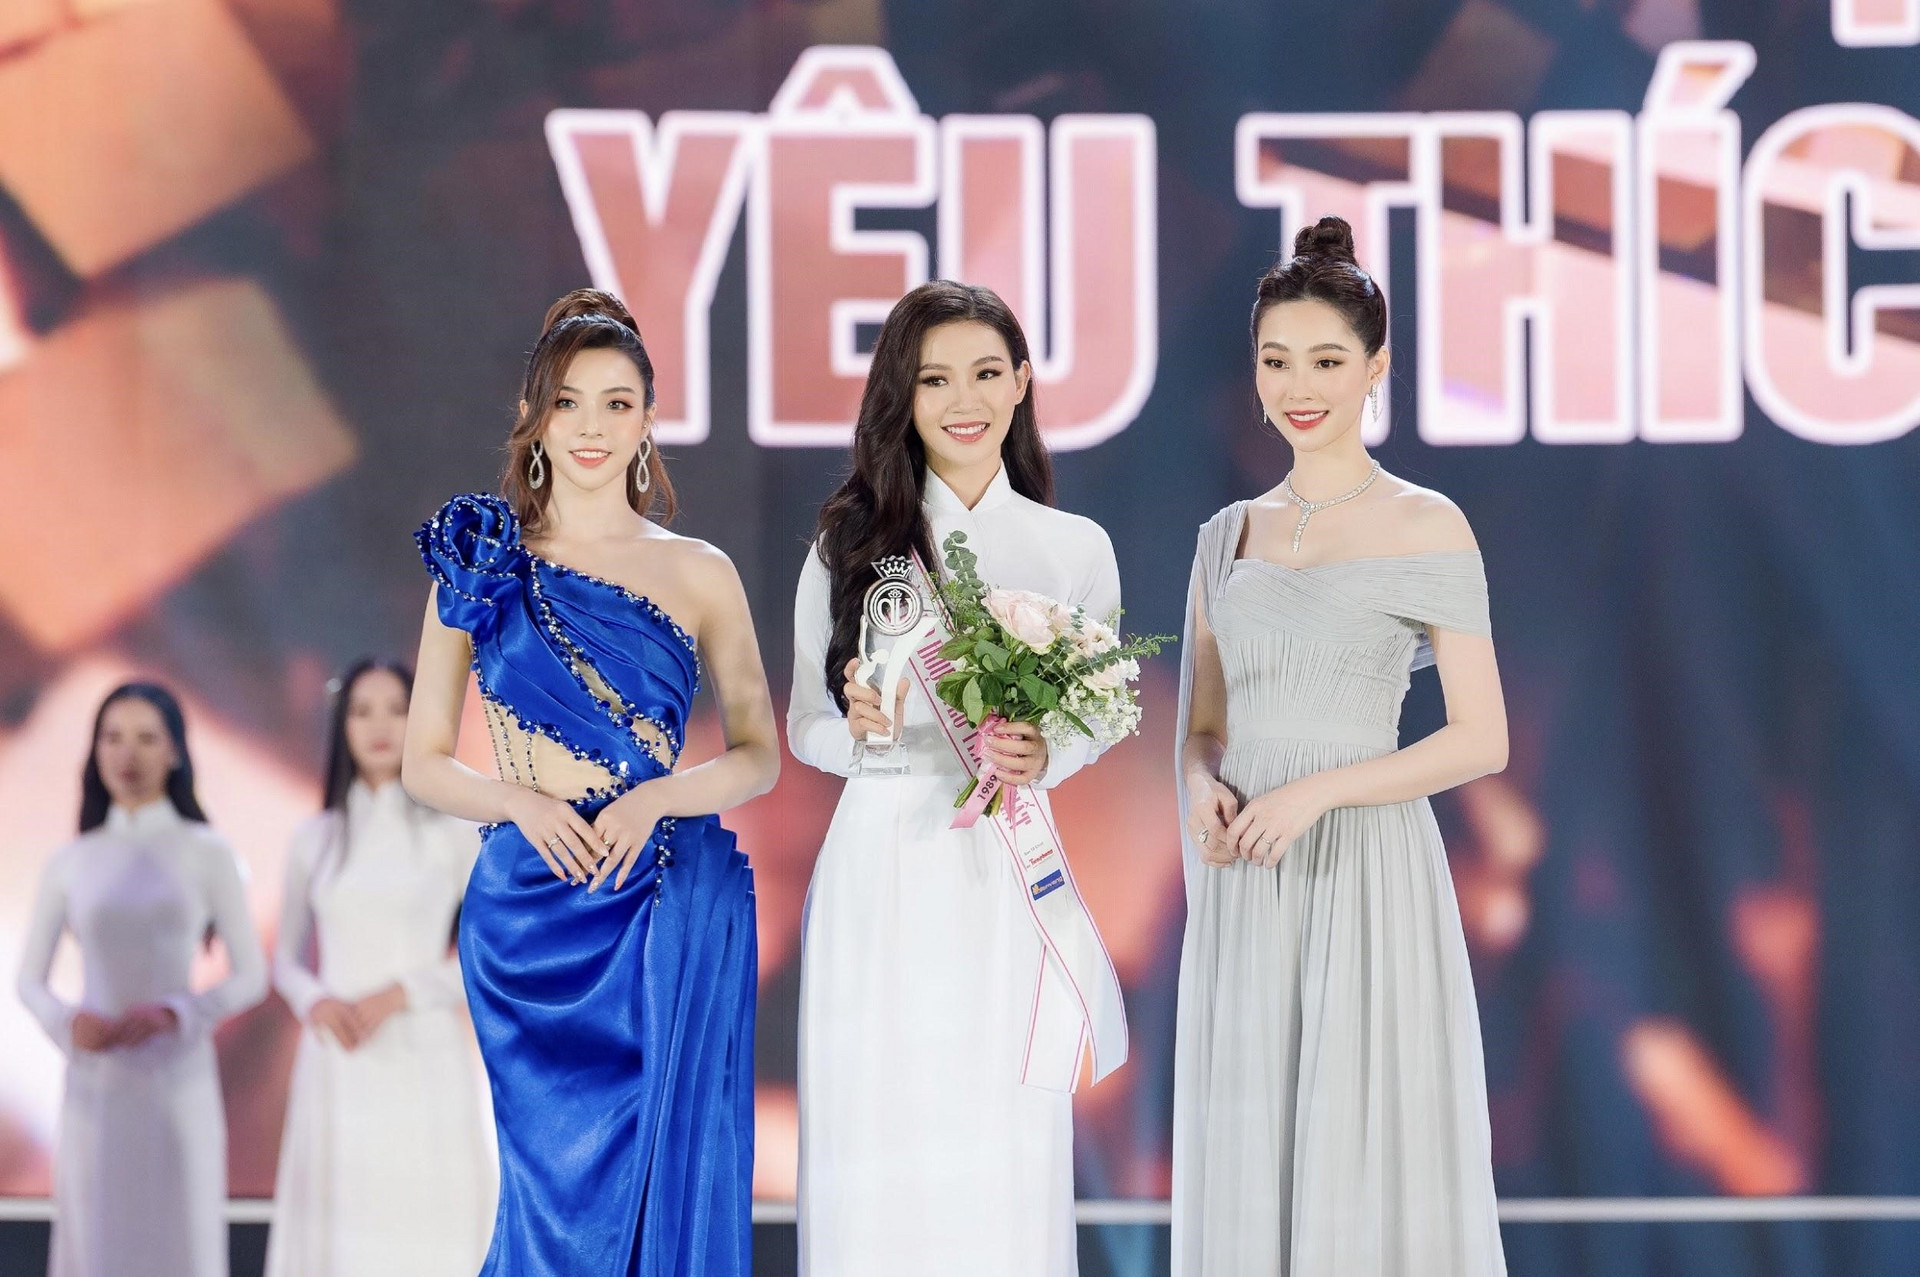 Đậu Hải Minh Anh: 'Giải thưởng Người đẹp được yêu thích nhất là dấu mốc đời tôi' - 3